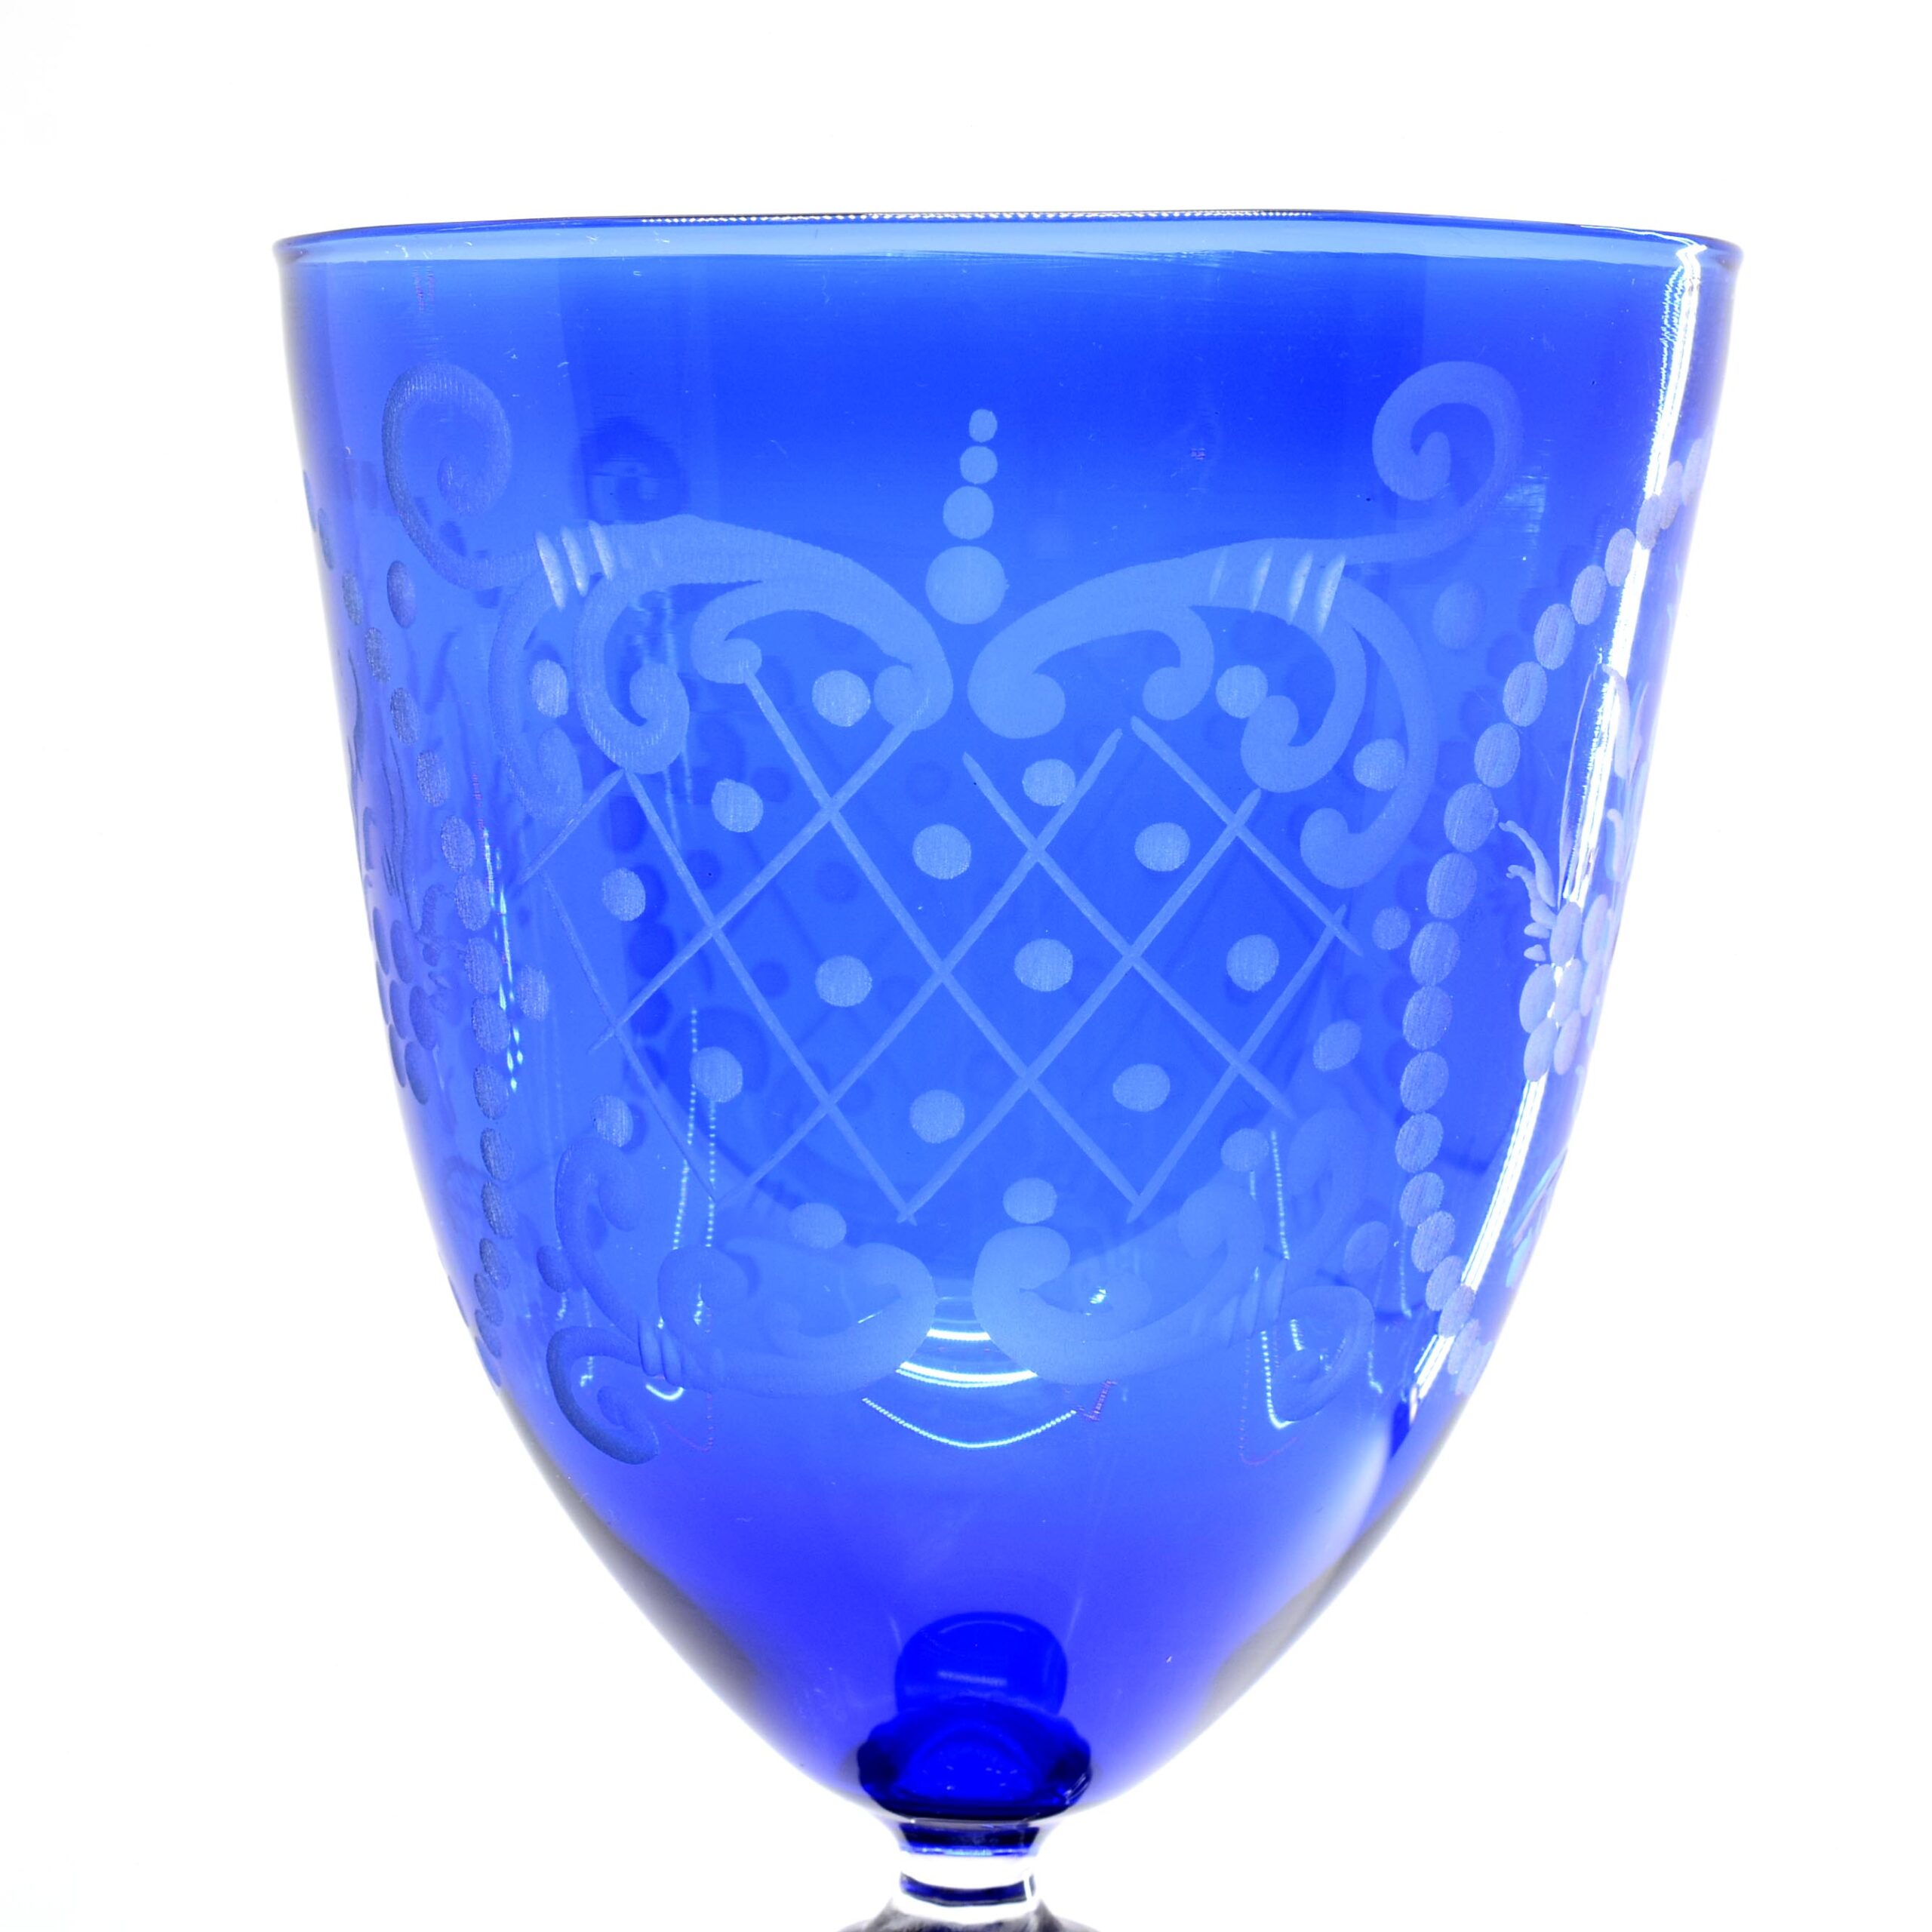 De Mio Giuliano Engraved Murano Glass Goblet (Art. 10791)